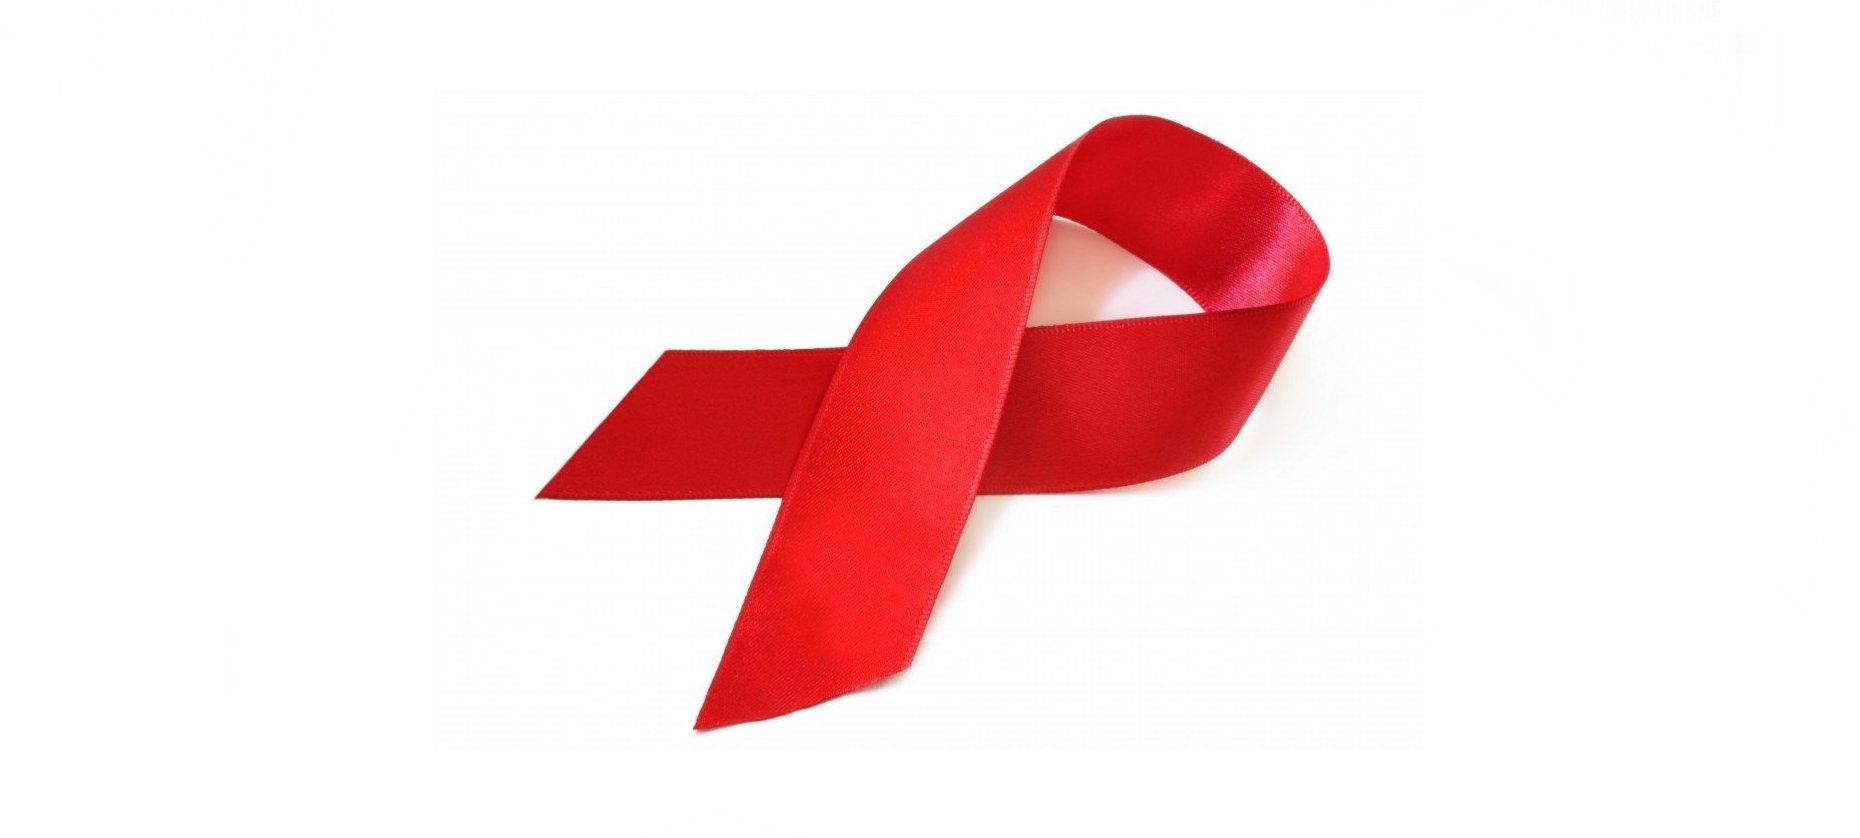 50 Imagens Do Dezembro Vermelho Mes De Prevencao Do Hiv E Aids